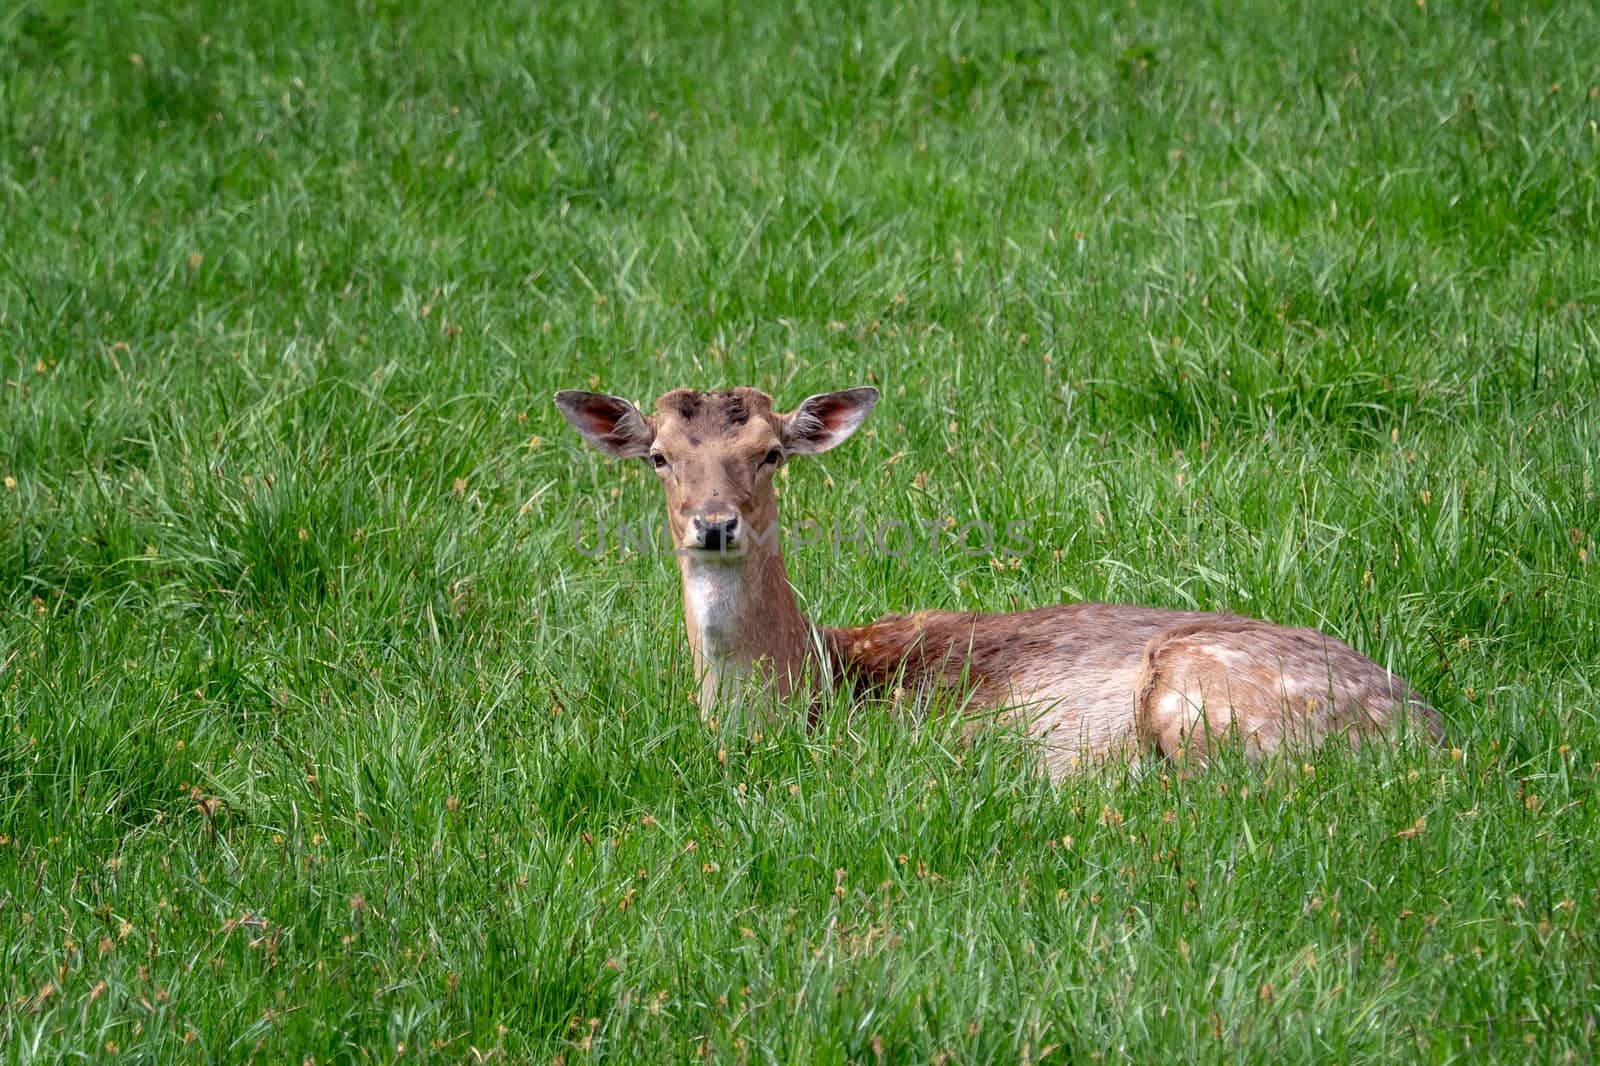 Fallow Deer (Dama dama), Female fallow deer in a meadow